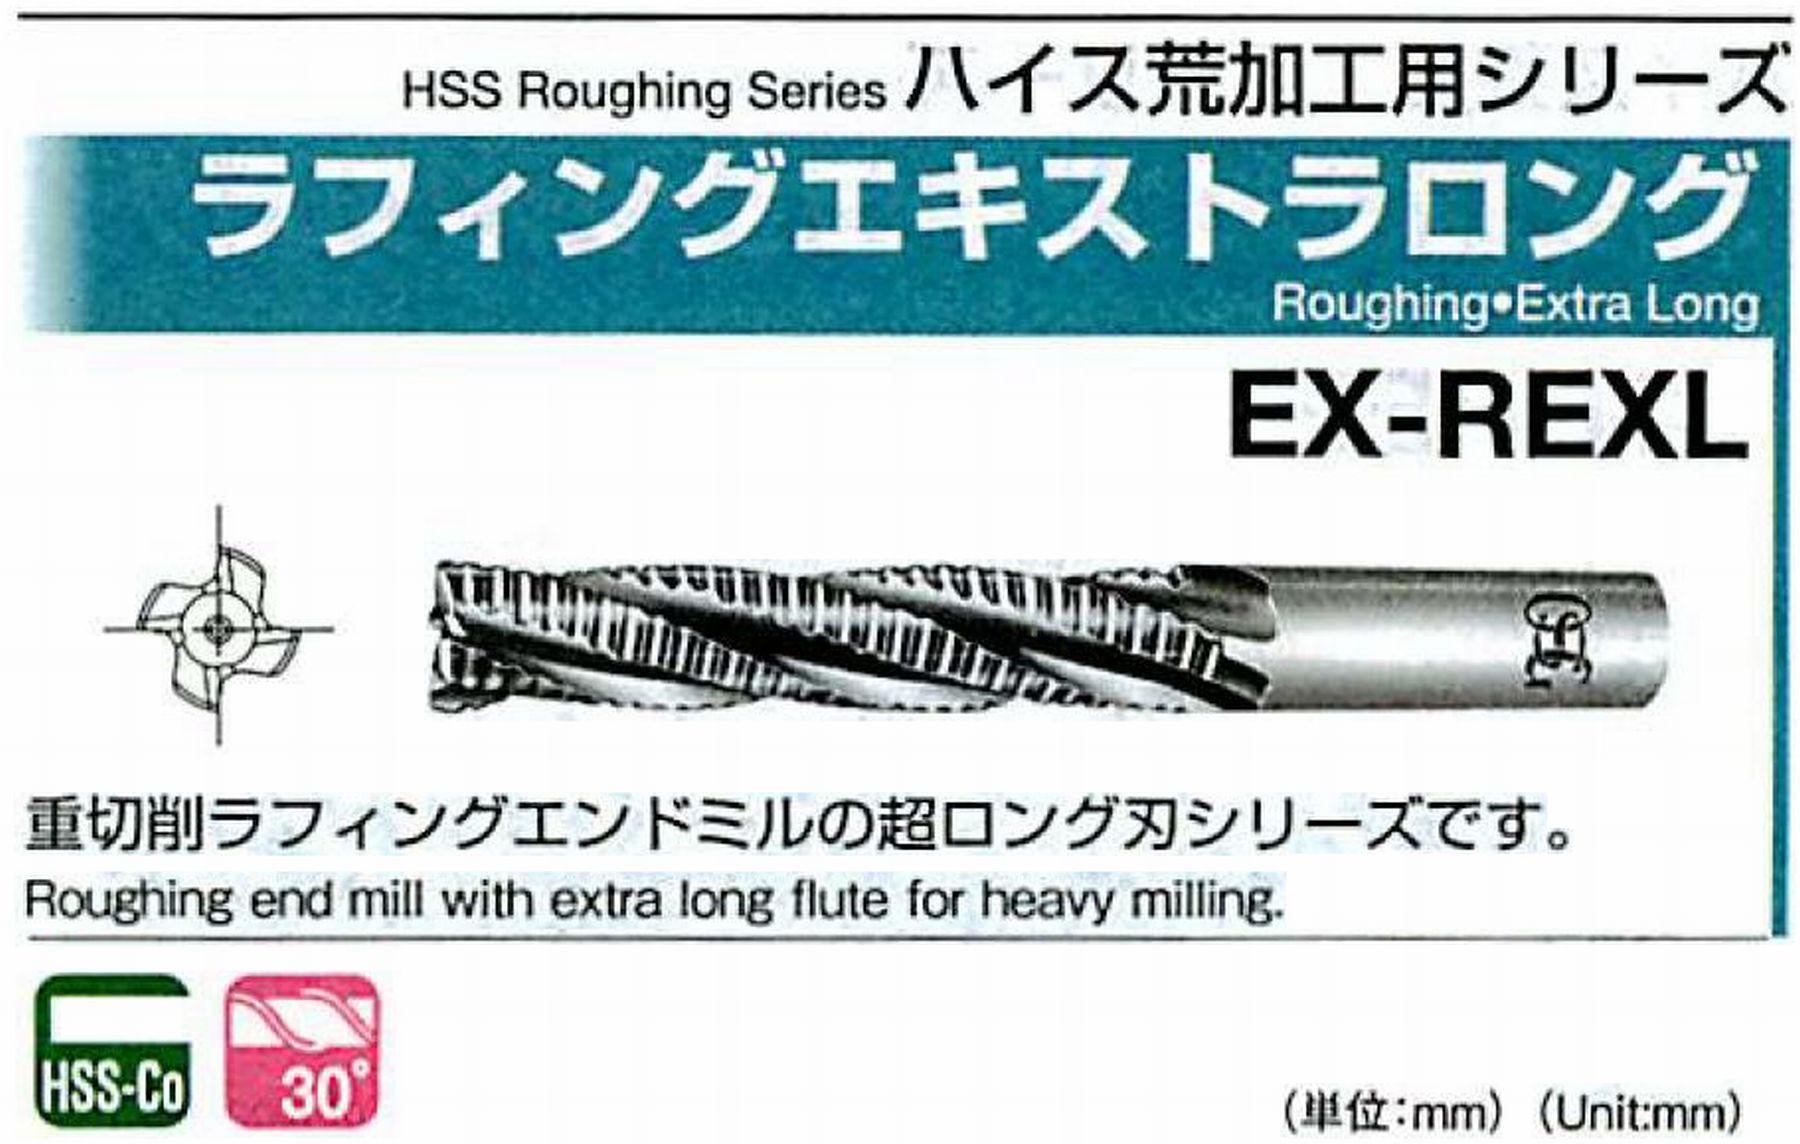 オーエスジー/OSG ラフィングエキストラ ロング EX-REXL 外径50 全長315 刃長212 シャンク径42mm 刃数6